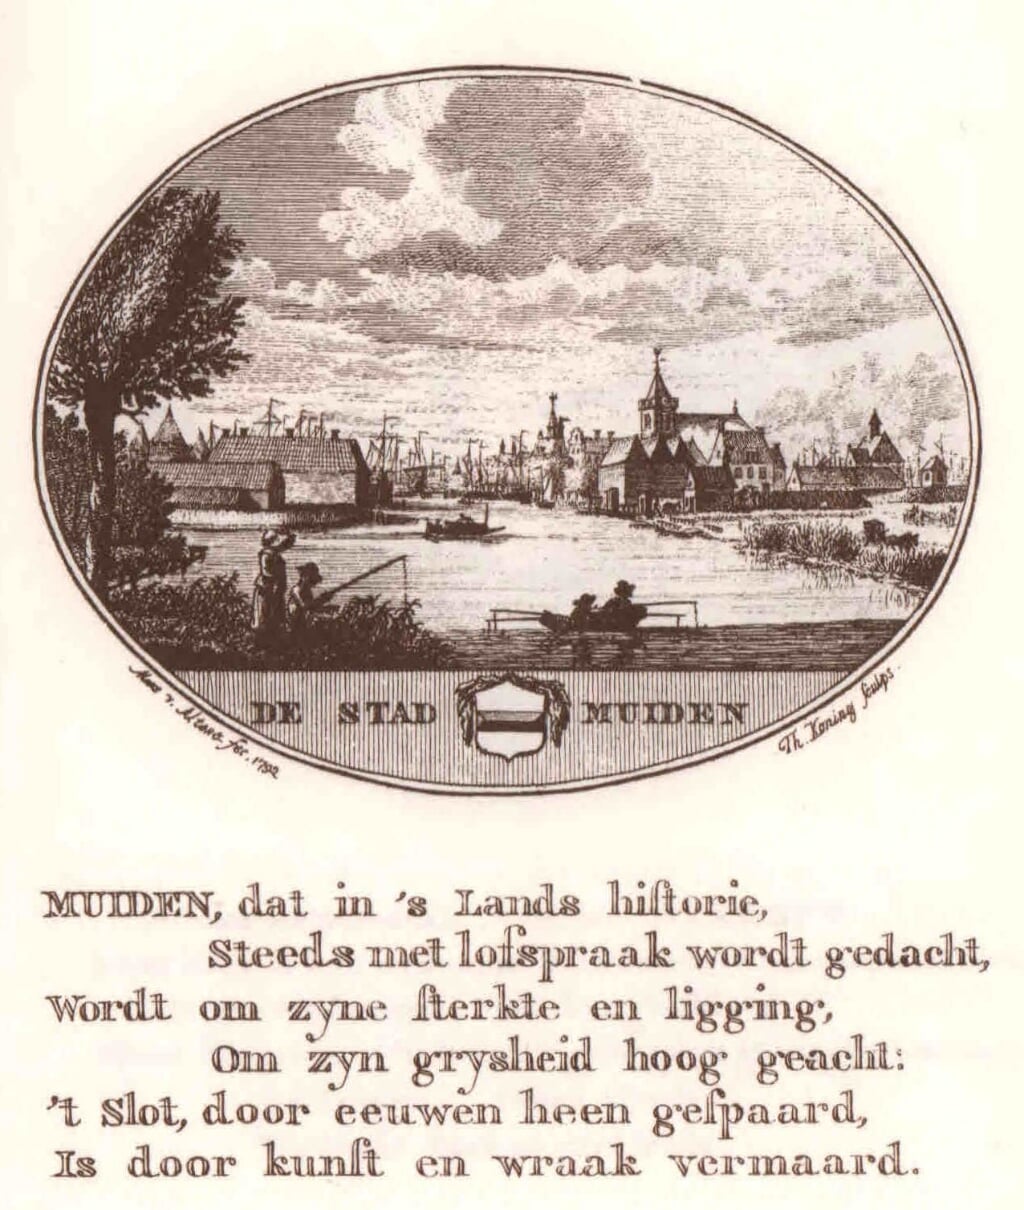 Muiden vanaf de zuidzijde. Plaat met tekst uit De Nederlandsche Stad- en Dorpbeschrijver van L. van Ollefen, 1795.